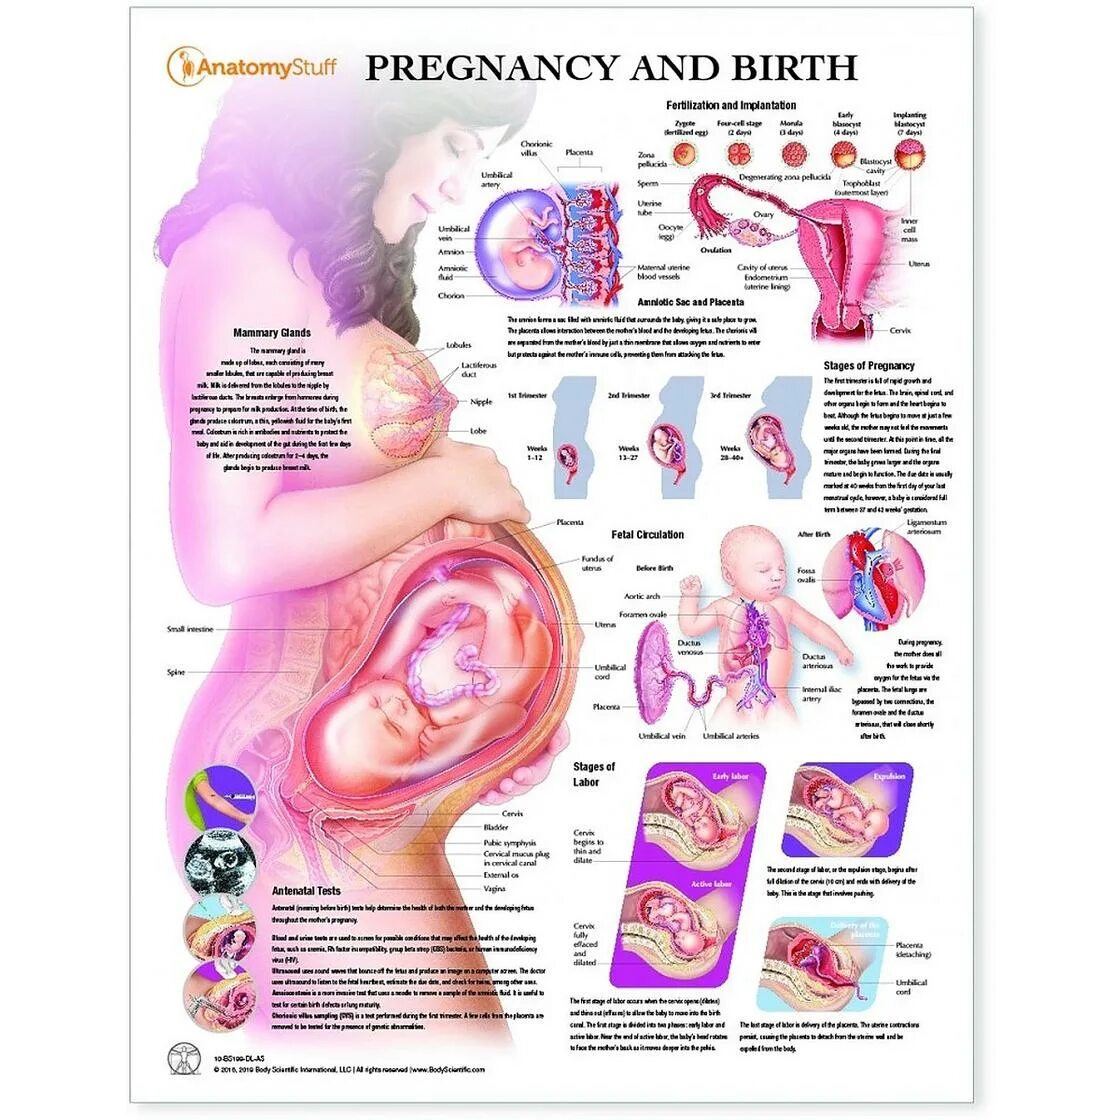 32 неделя беременности шевелится. Положение ребенка в животе на 33 неделе беременности. Плод в животе матери схема. Положение органов на 32 неделе беременности. Эмбрион 34 недели беременности вес плода.